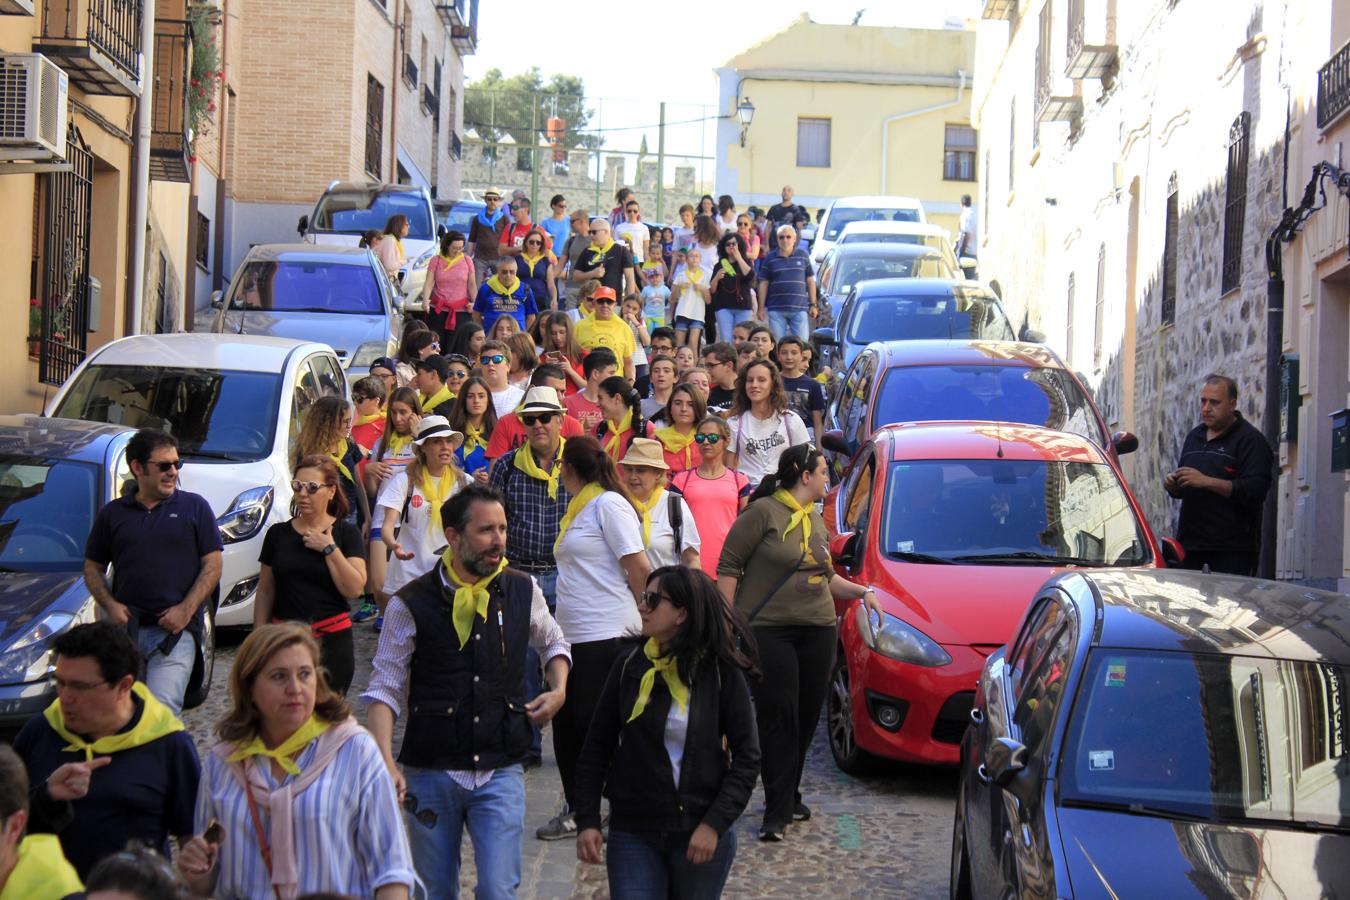 La marcha del colegio Santiago el Mayor, en imágenes